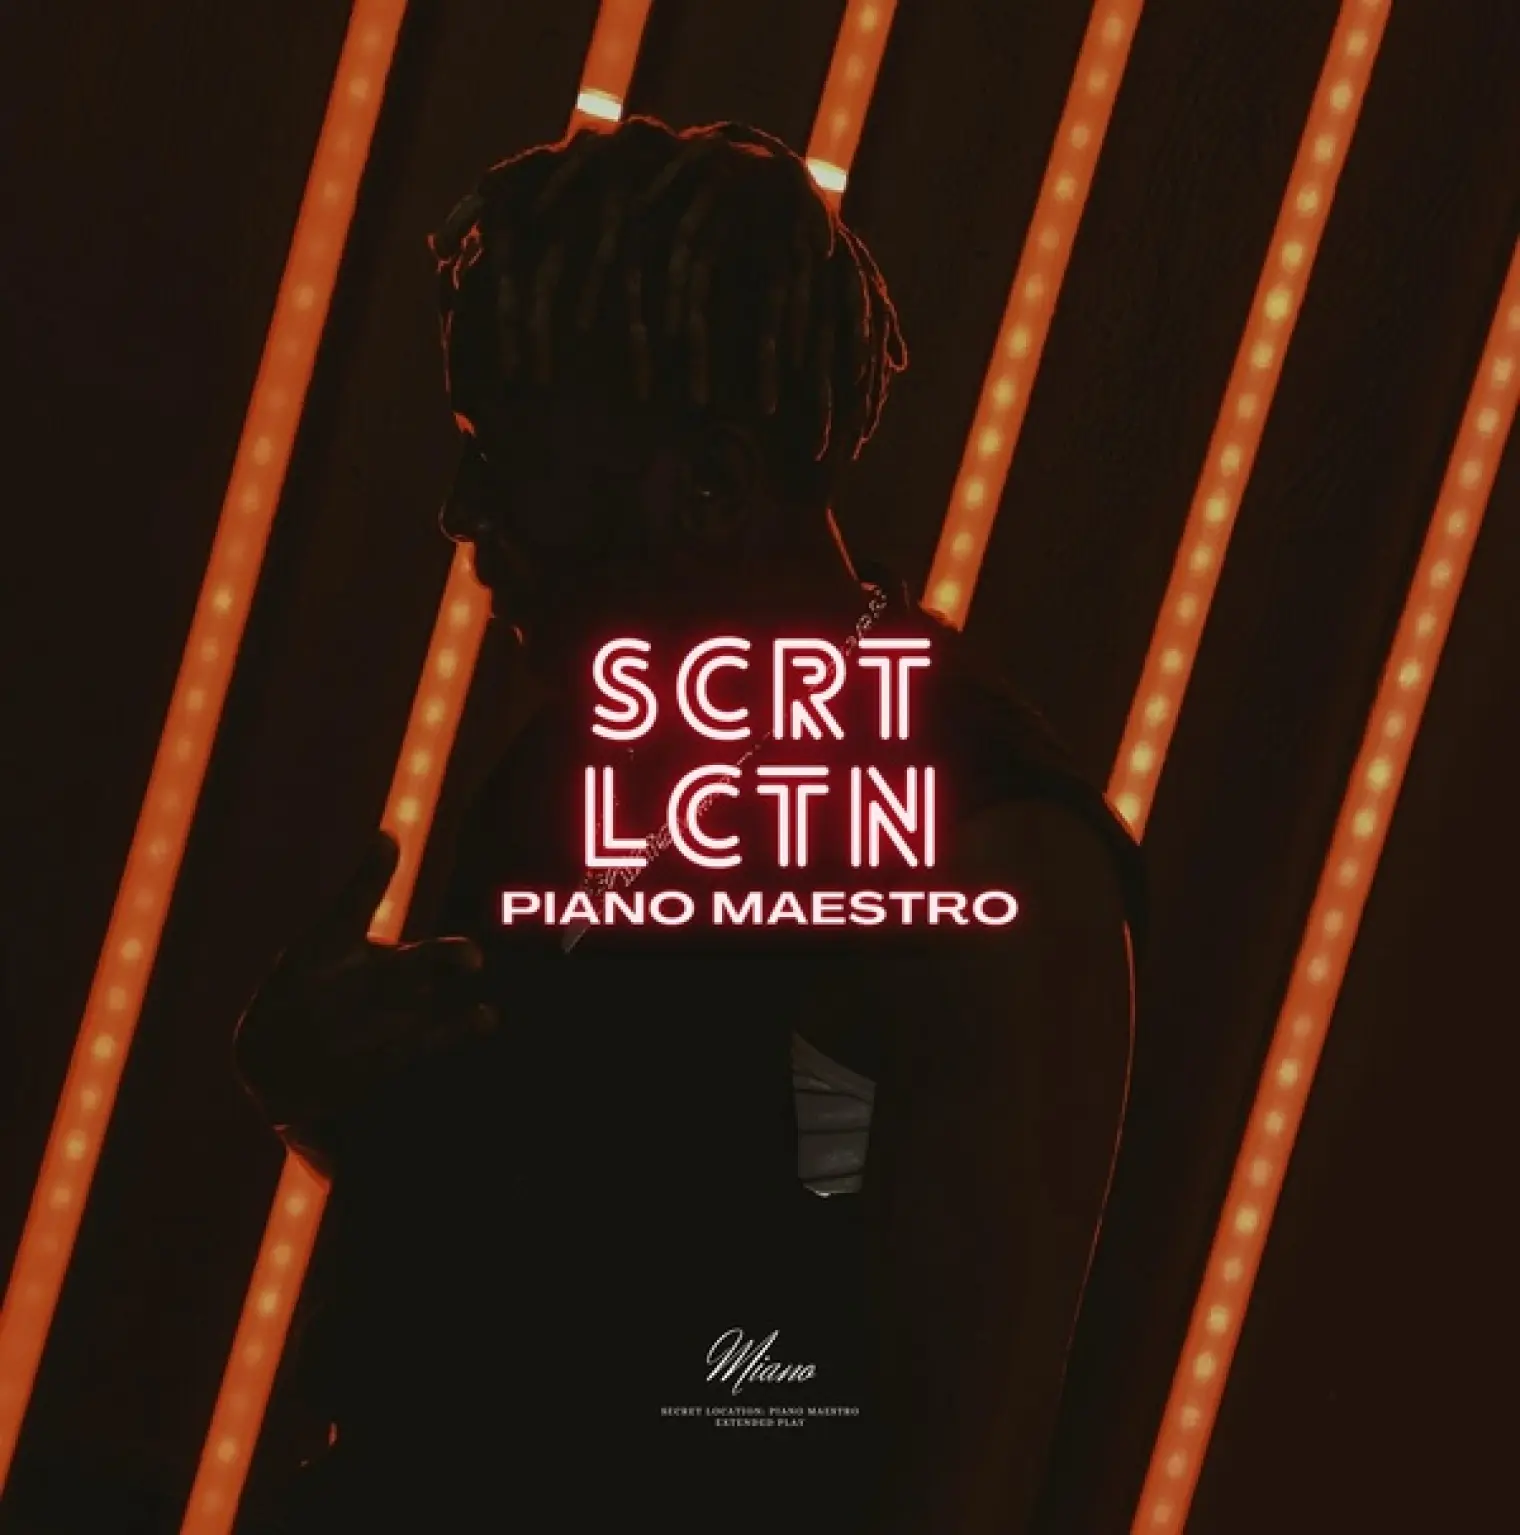 SCRT LCTN: Piano Maestro -  Miano 